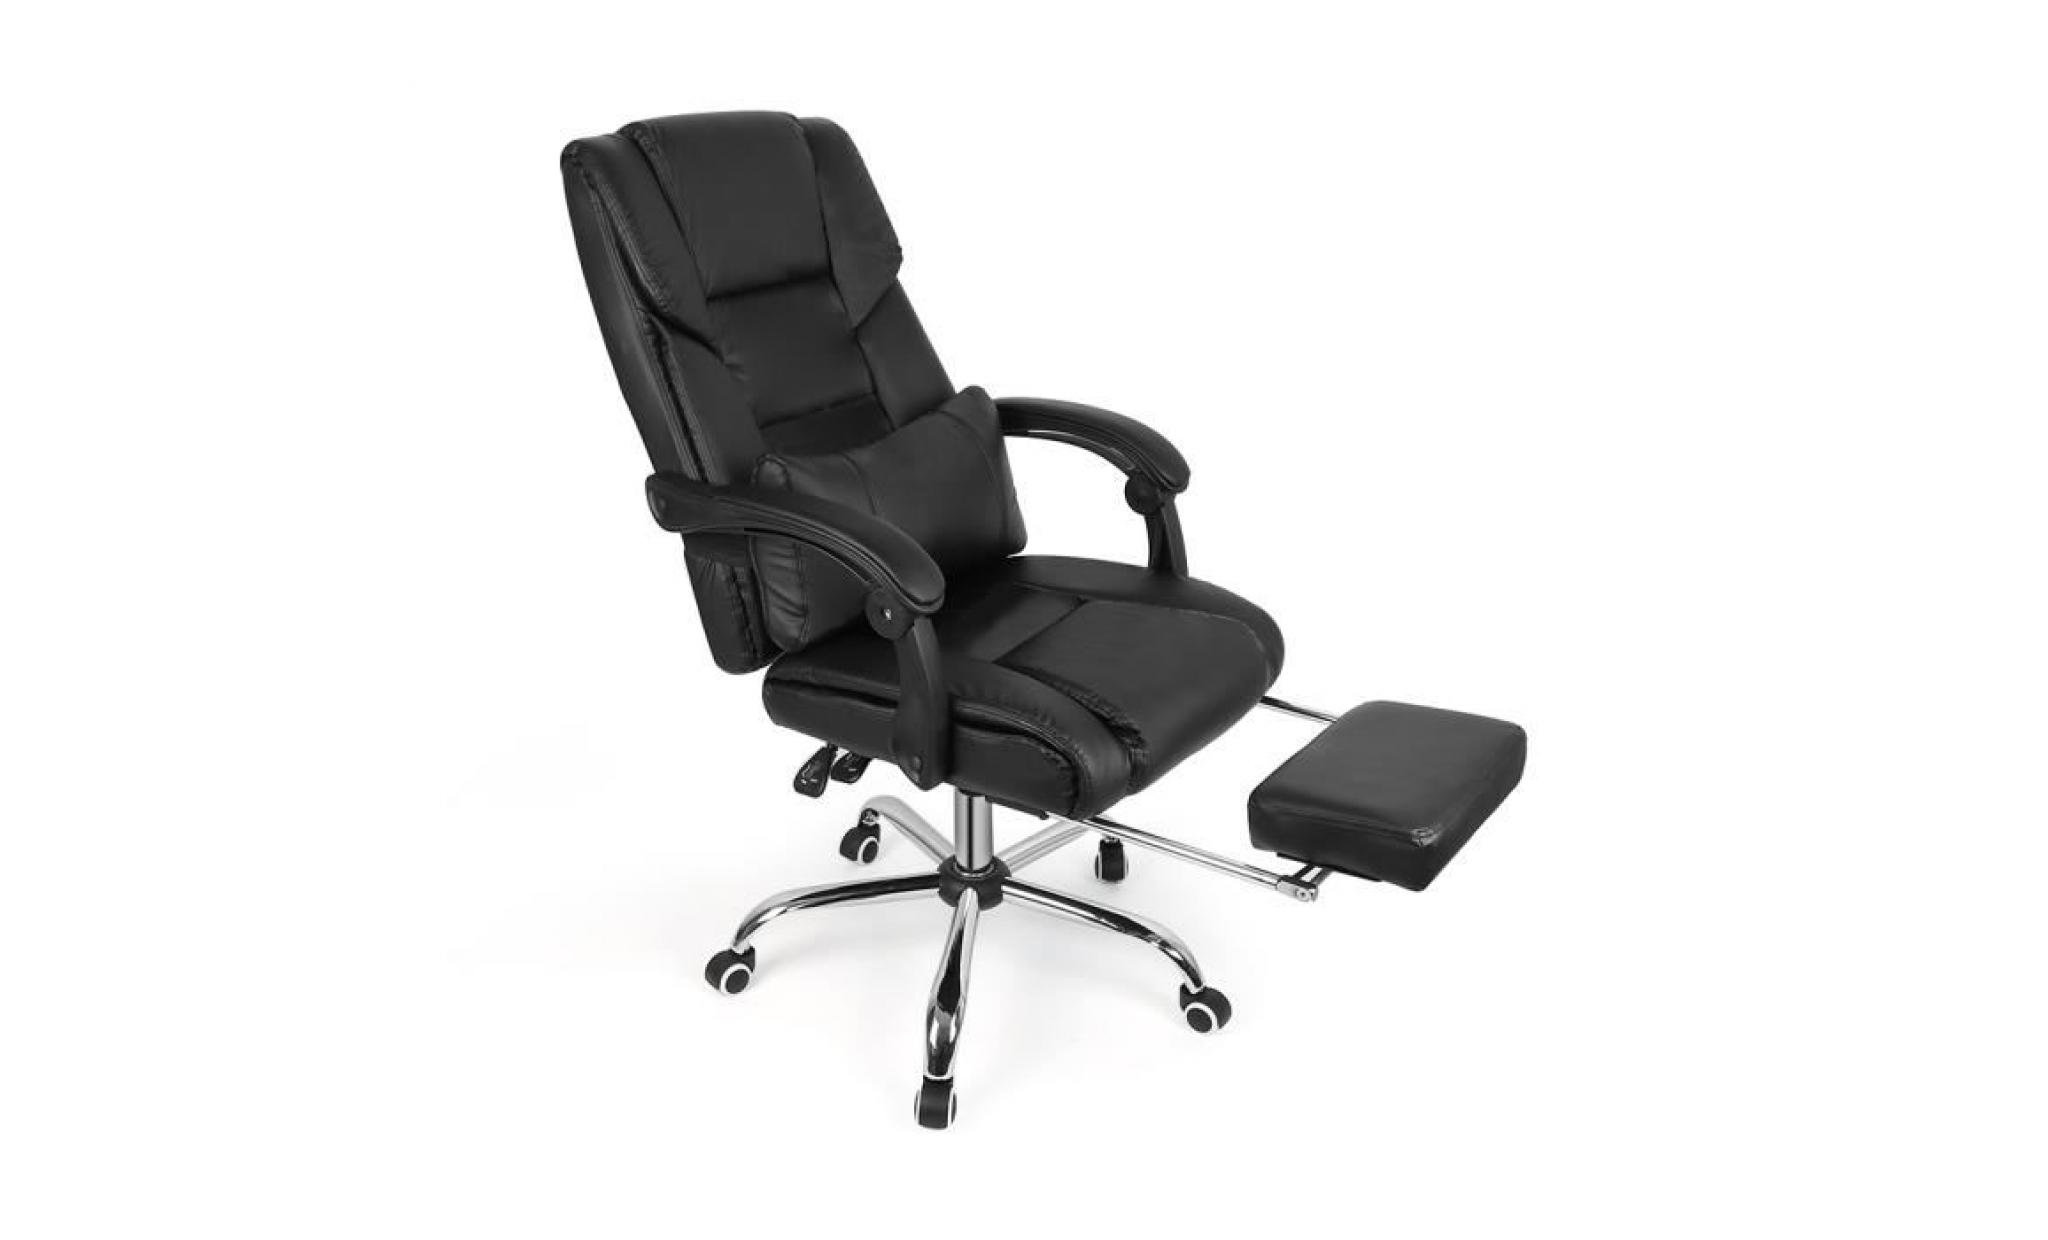 lo fauteuil de bureau noir chaise pour ordinateur pu pas cher